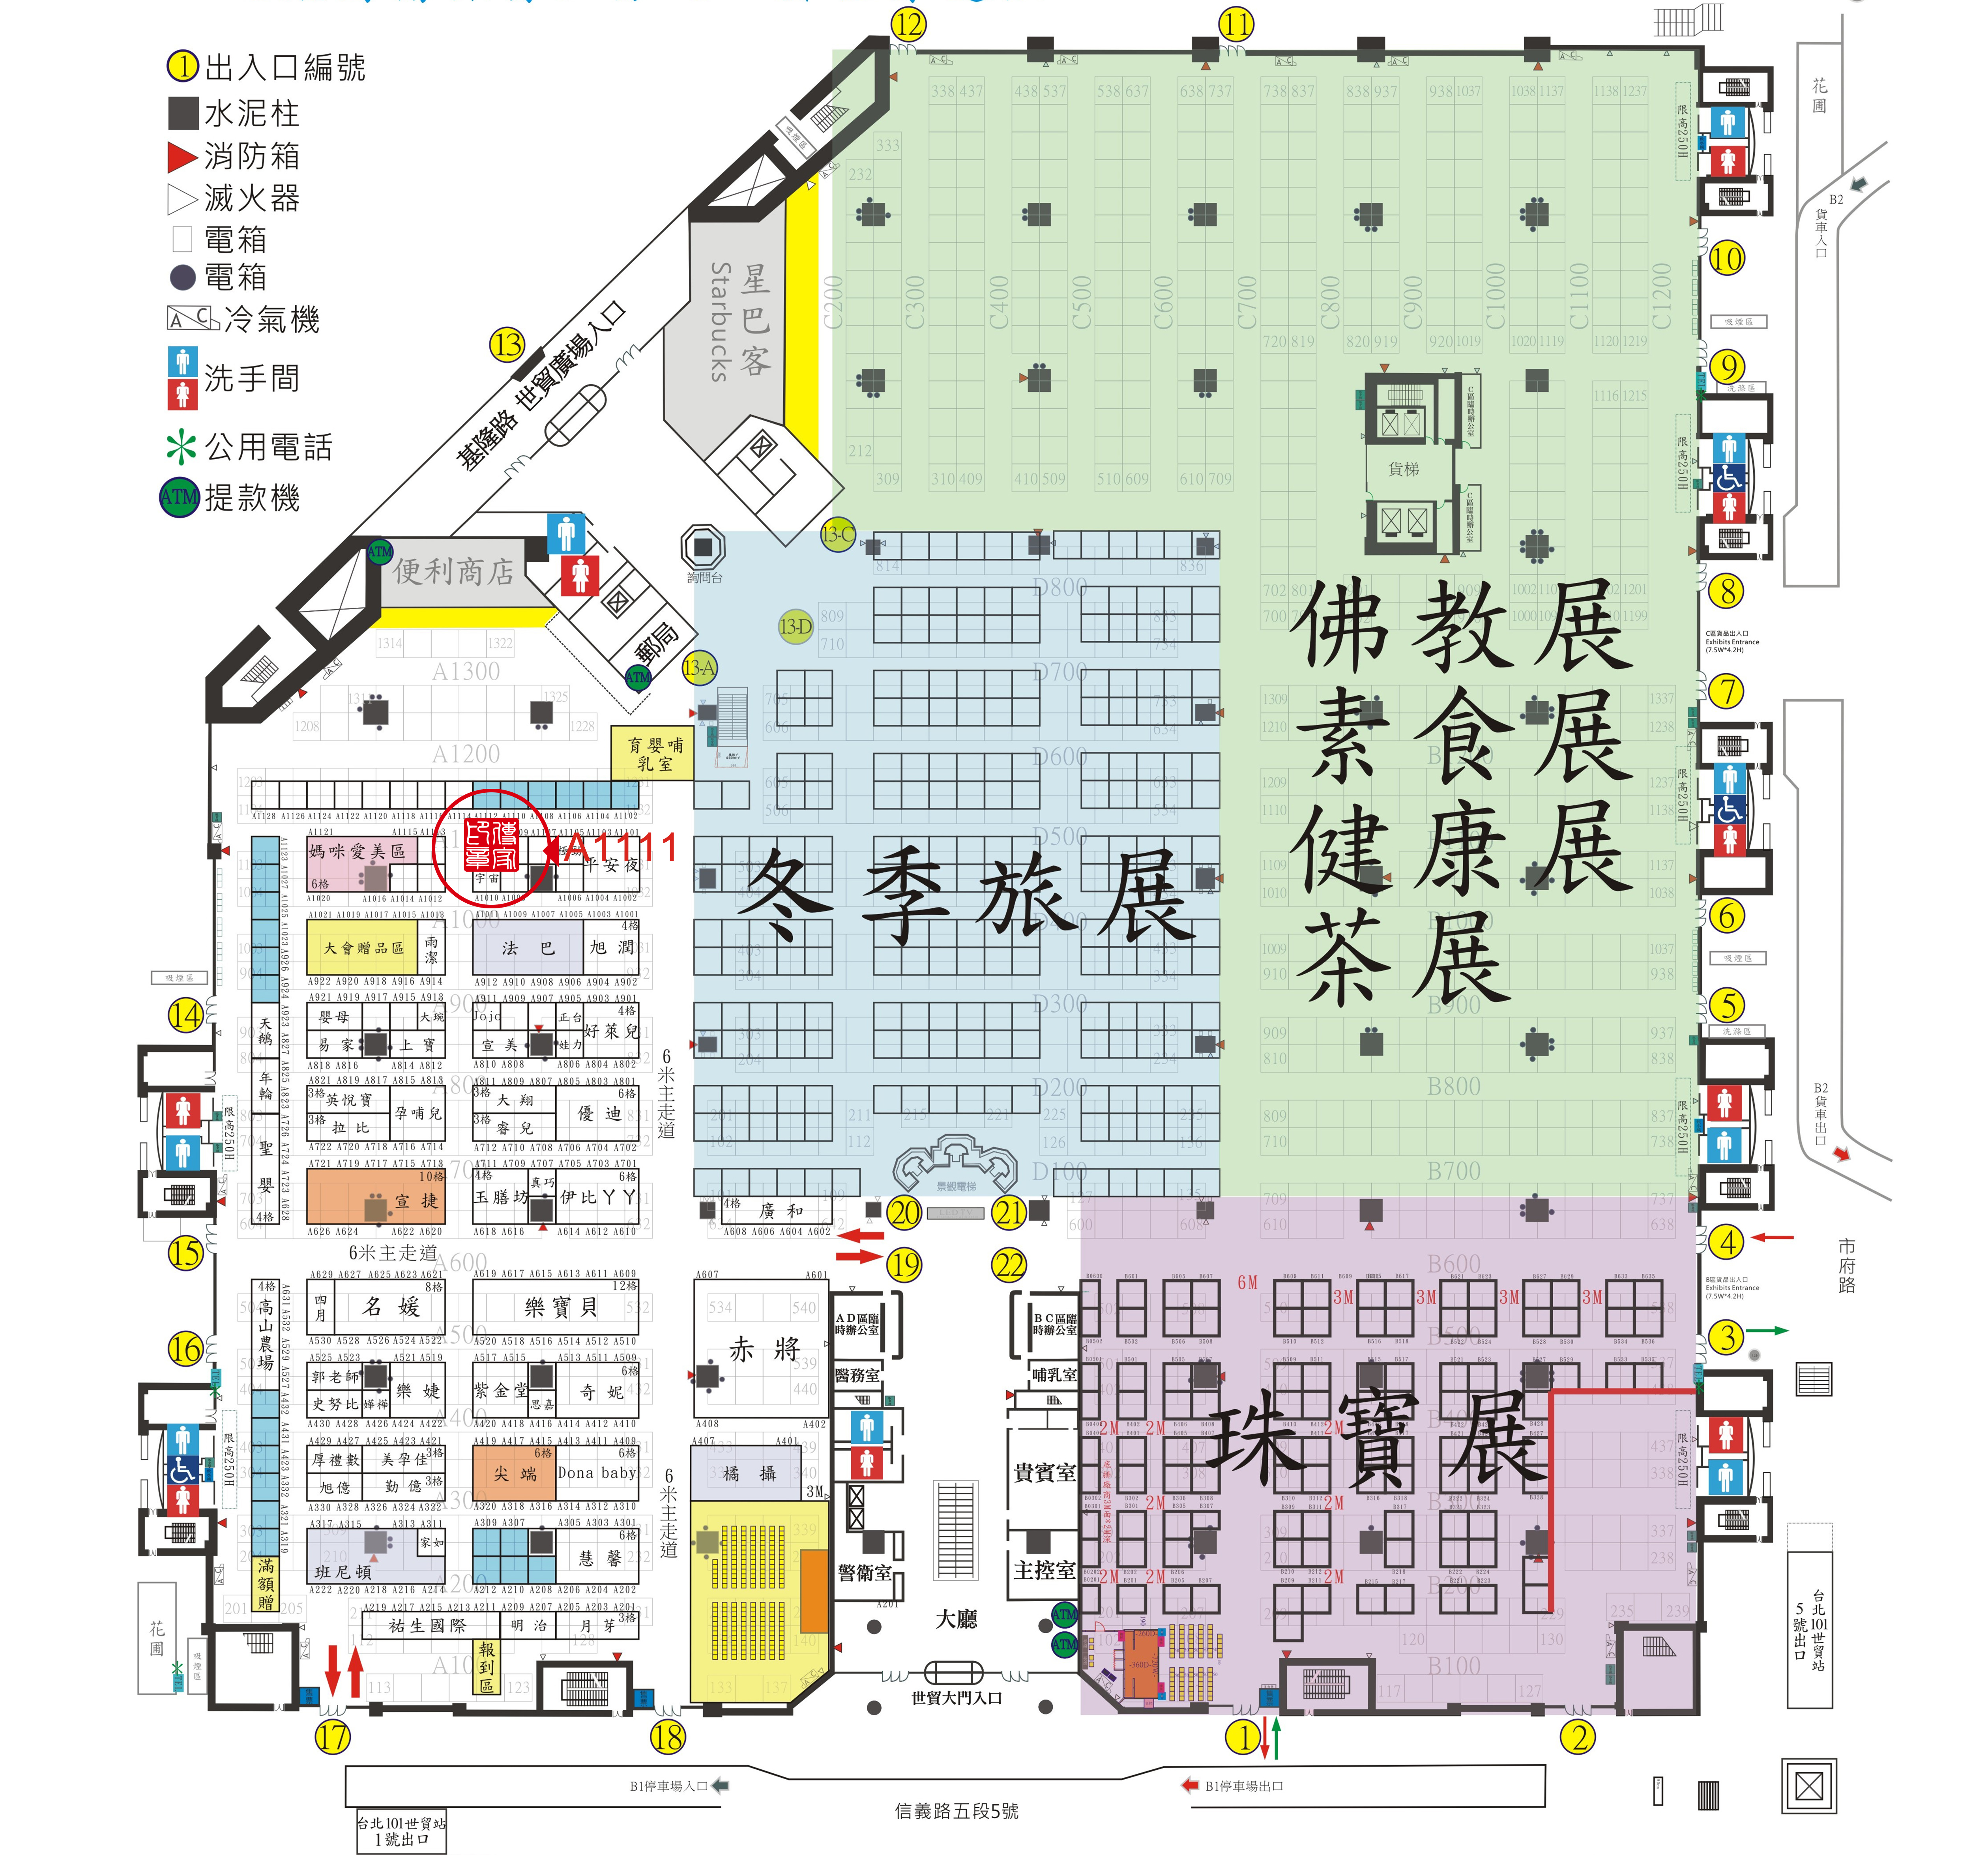 傳家手工印章，台北世貿婦幼用品大展攤位平面位置圖，展示印章各種商品